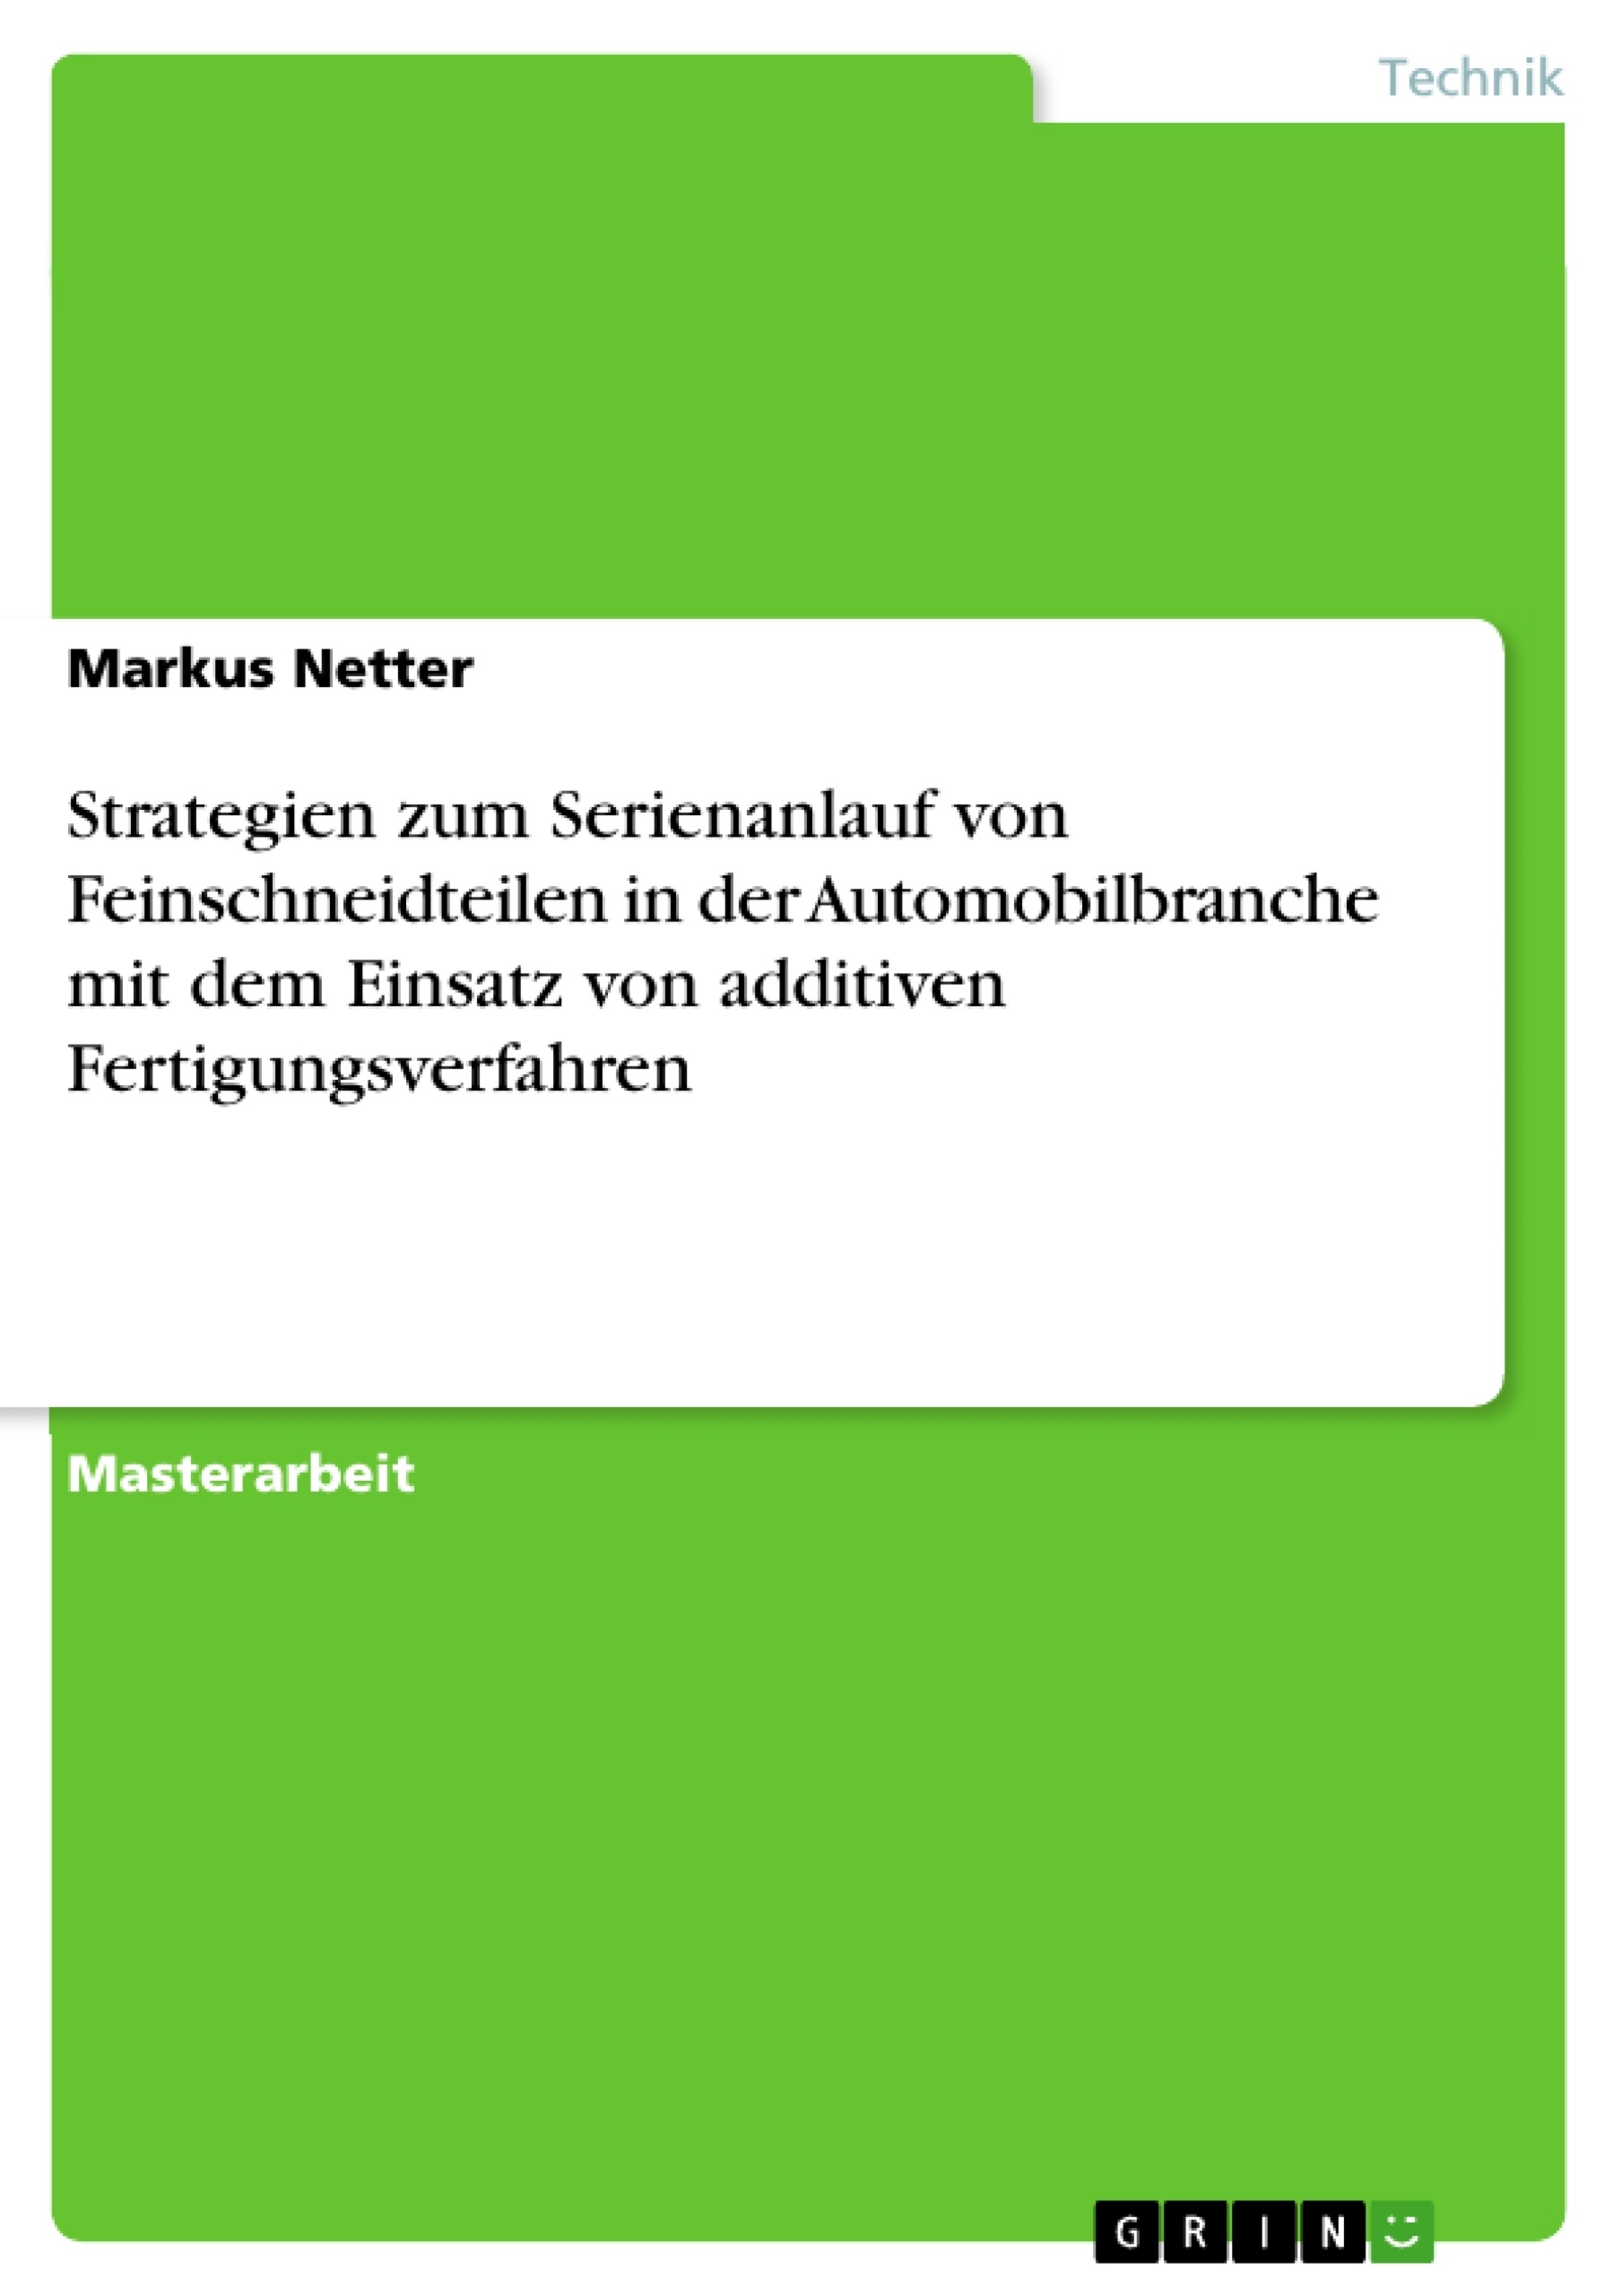 Titre: Strategien zum Serienanlauf von Feinschneidteilen in der Automobilbranche mit dem Einsatz von additiven Fertigungsverfahren